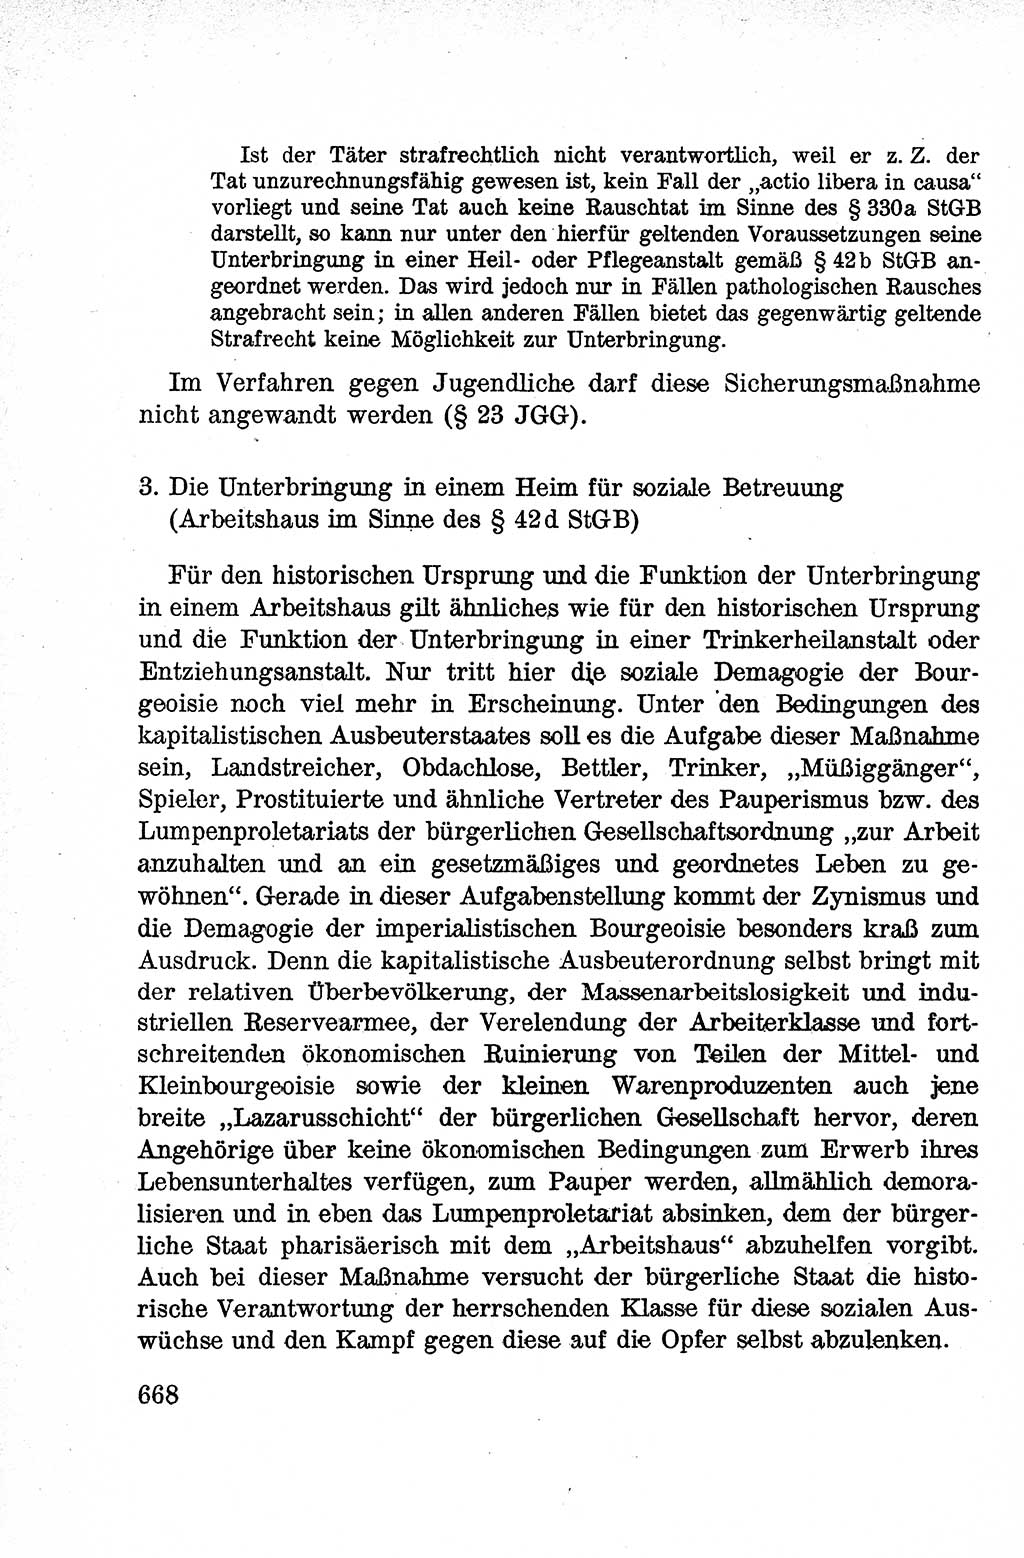 Lehrbuch des Strafrechts der Deutschen Demokratischen Republik (DDR), Allgemeiner Teil 1959, Seite 668 (Lb. Strafr. DDR AT 1959, S. 668)